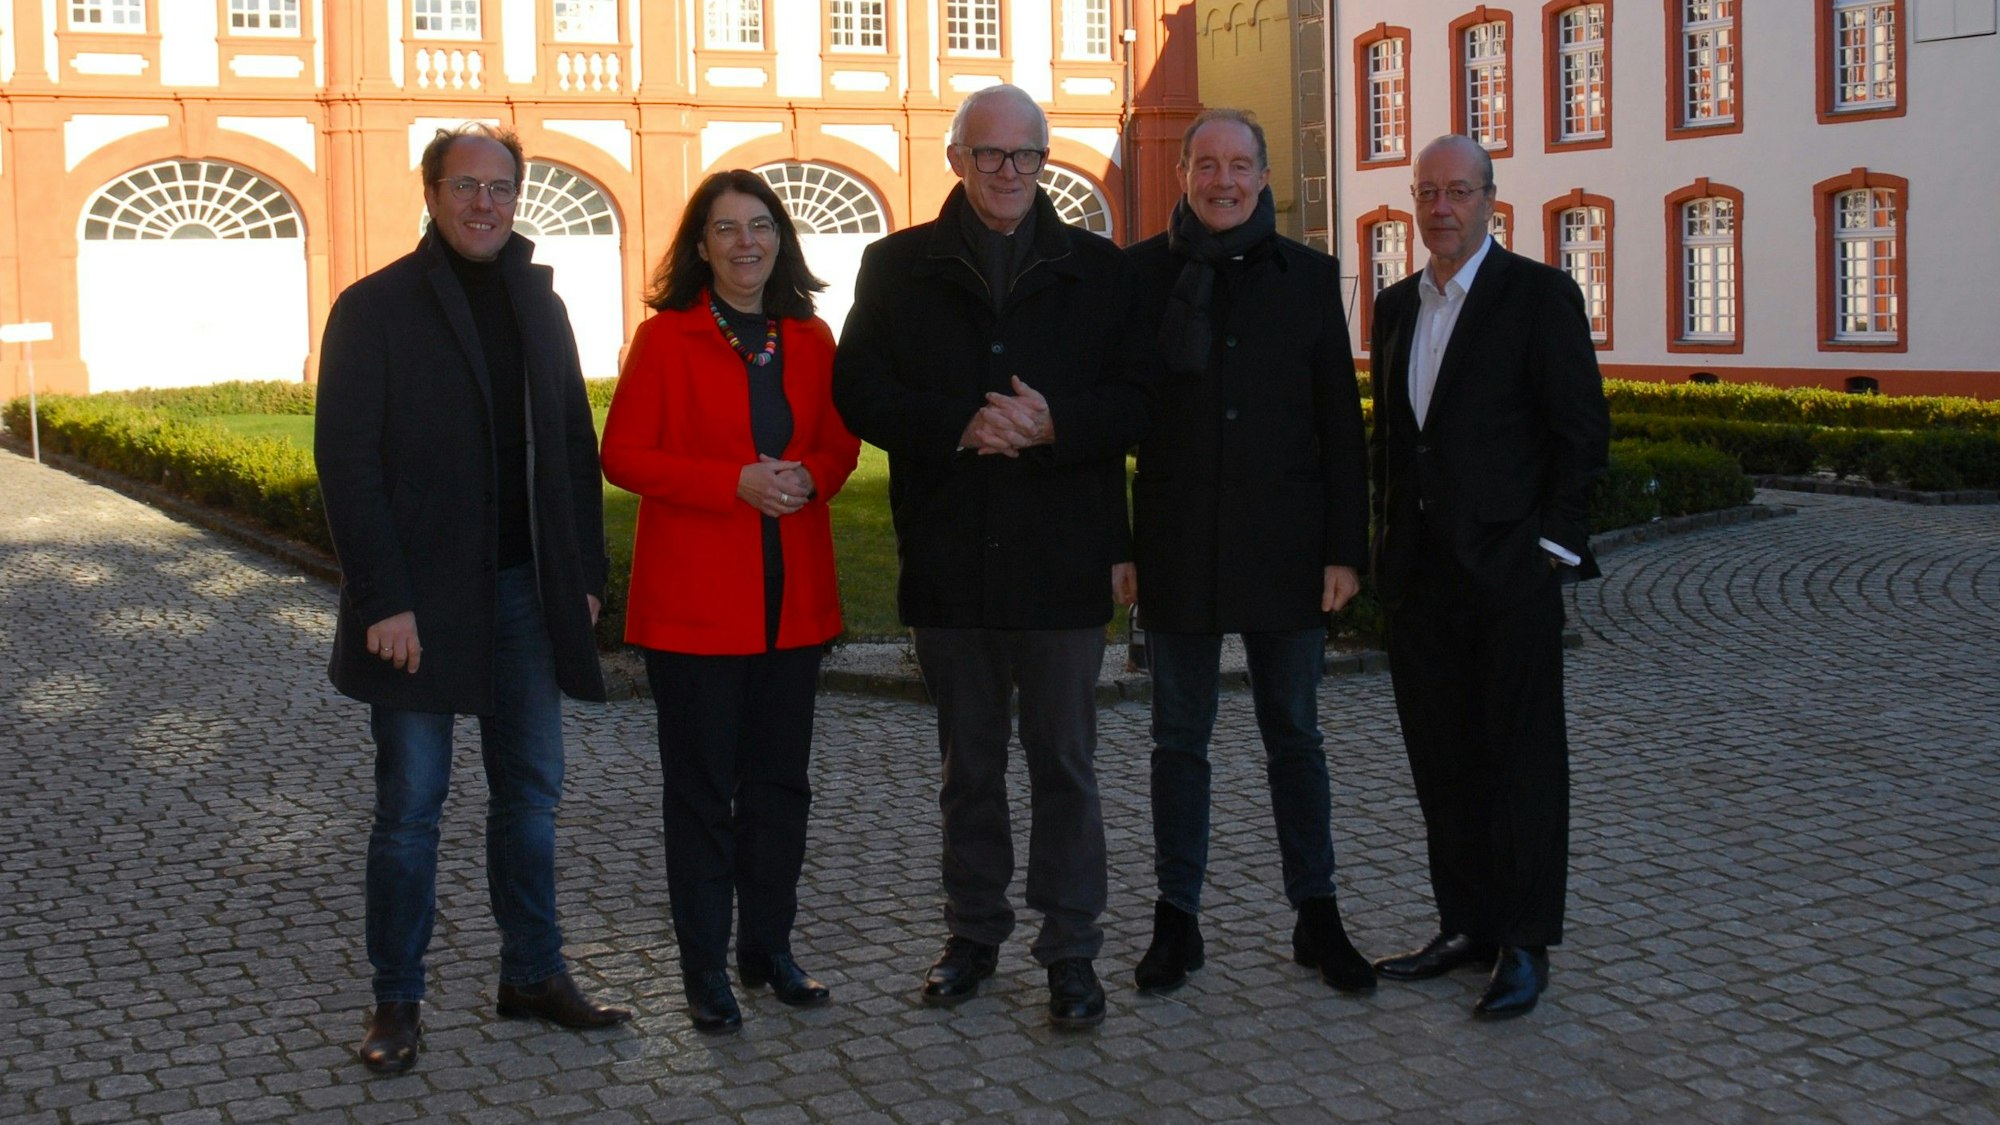 Auf dem Foto sind der ehemalige Ministerpräsident Jürgen Rüttgers und weitere Mitstreiter zu sehen. Sie stellten das Programm für das Jubiläumsjahr vor.